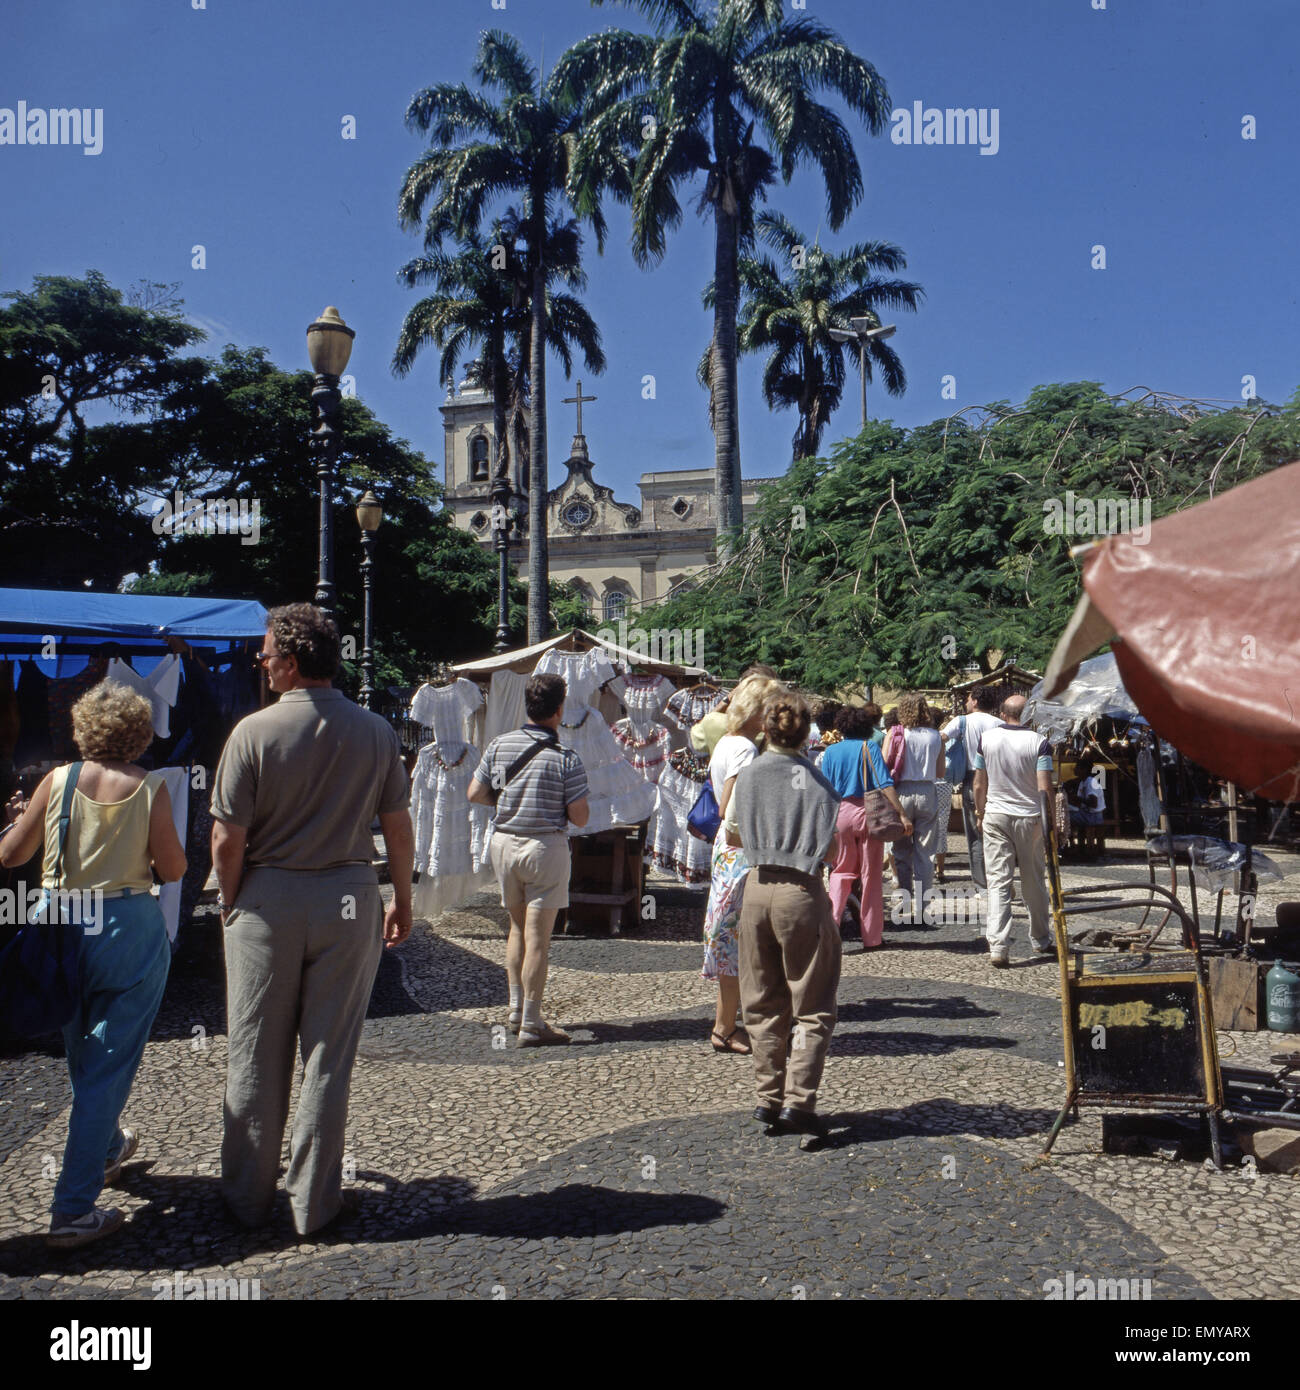 Touristen auf dem Markt in der Altstadt von Salvador da Bahia, Brasilien Anfang 1990er Jahre. Tourists on the market at the old  Stock Photo